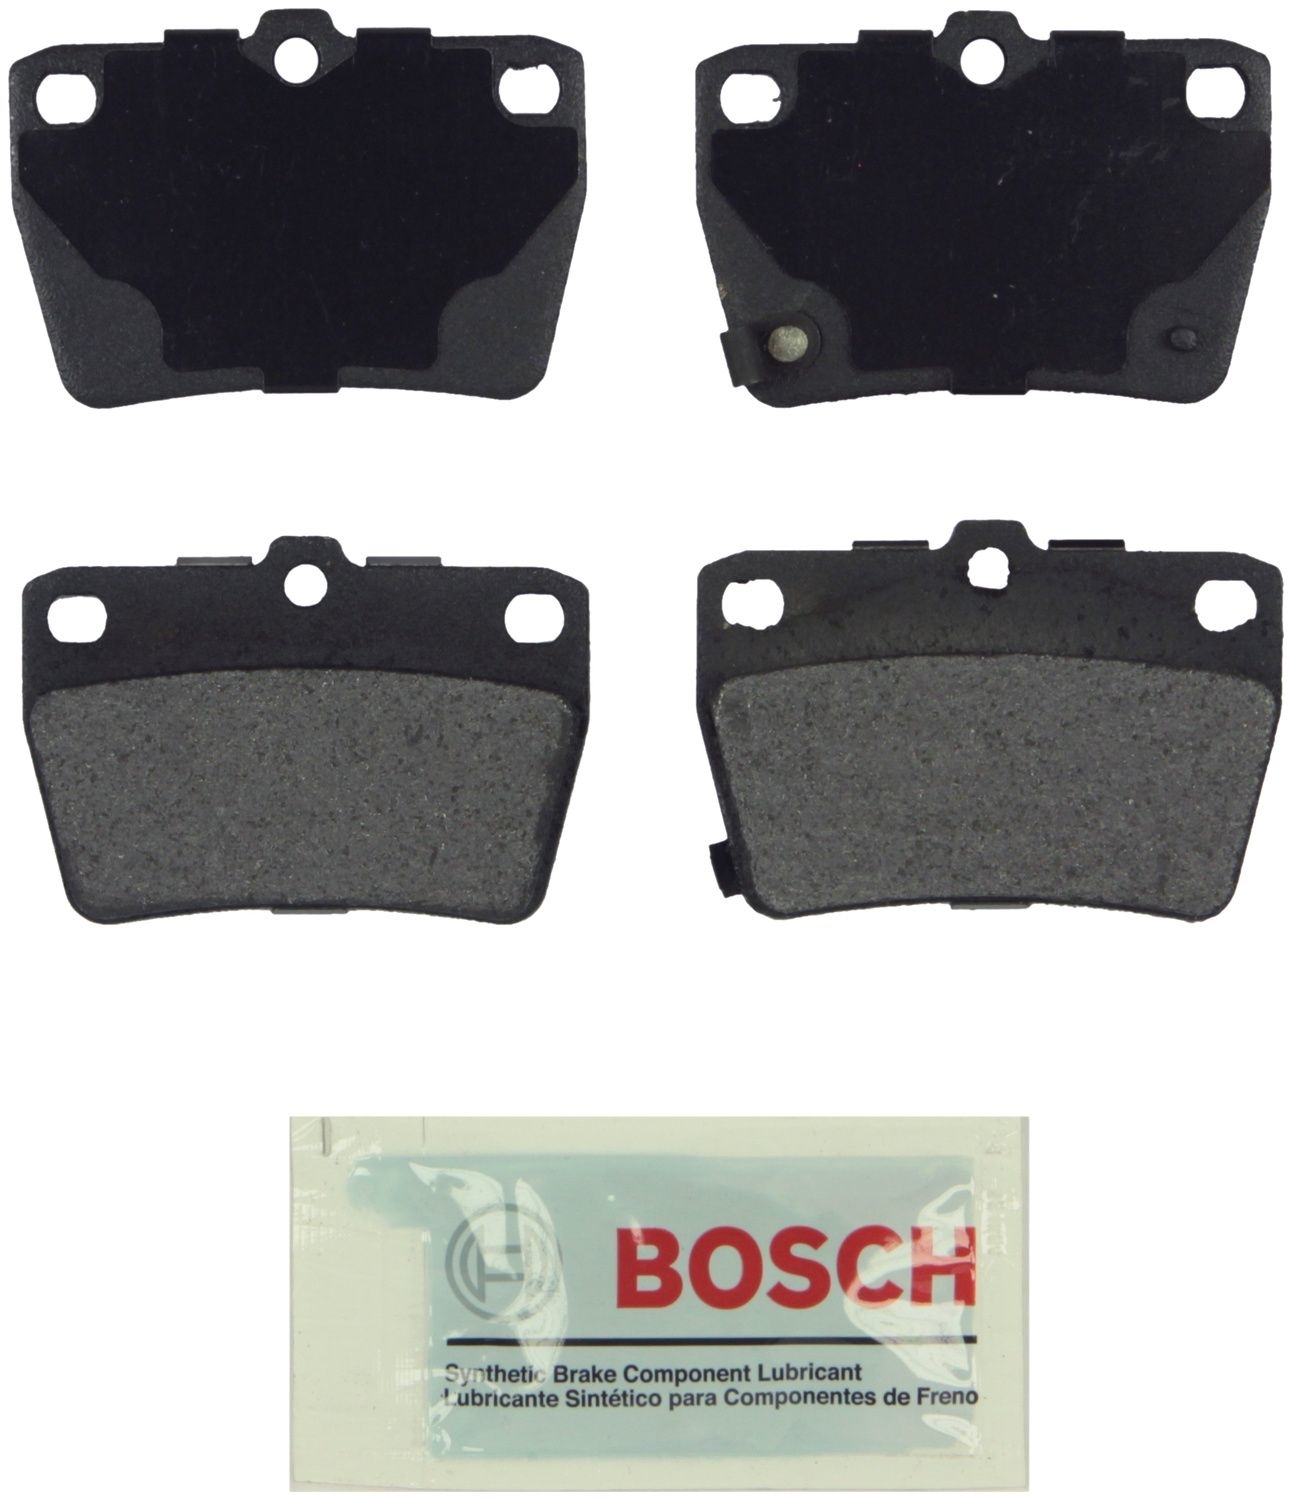 BOSCH BRAKE - Bosch Blue Ceramic Brake Pads - BQC BE1051